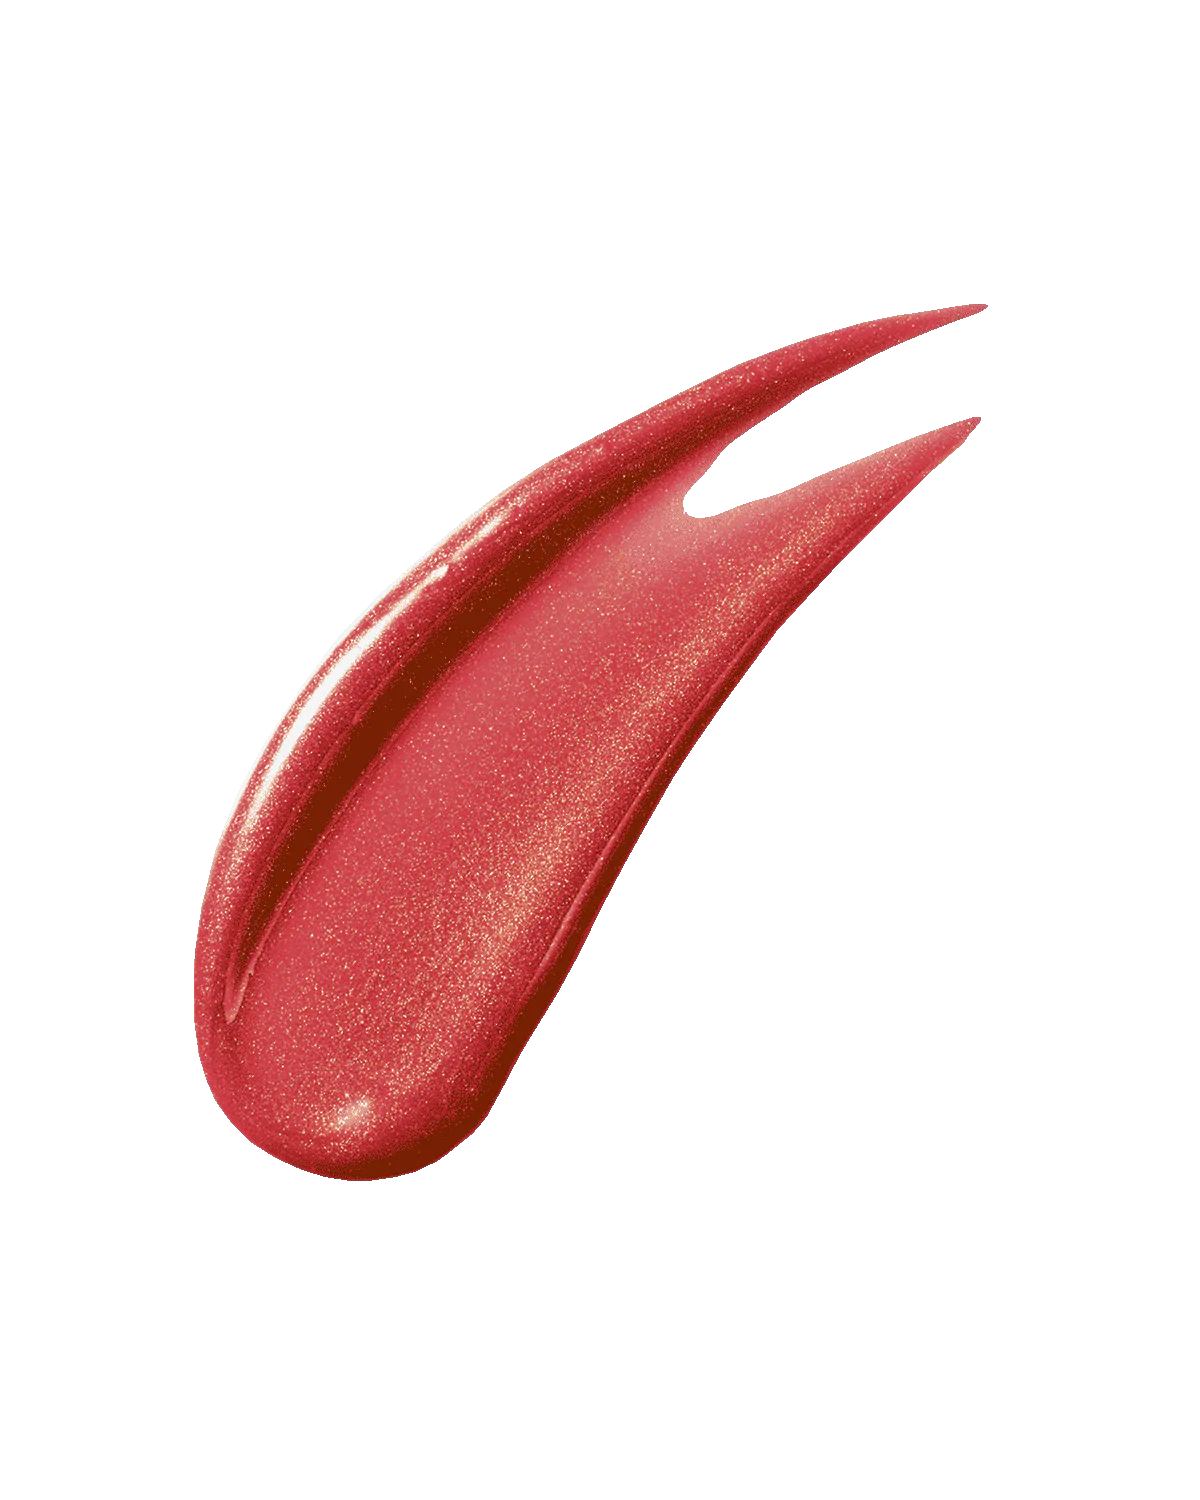 Gloss bomb universal lip luminizer Fenty Beauty - APGMakeupSolution